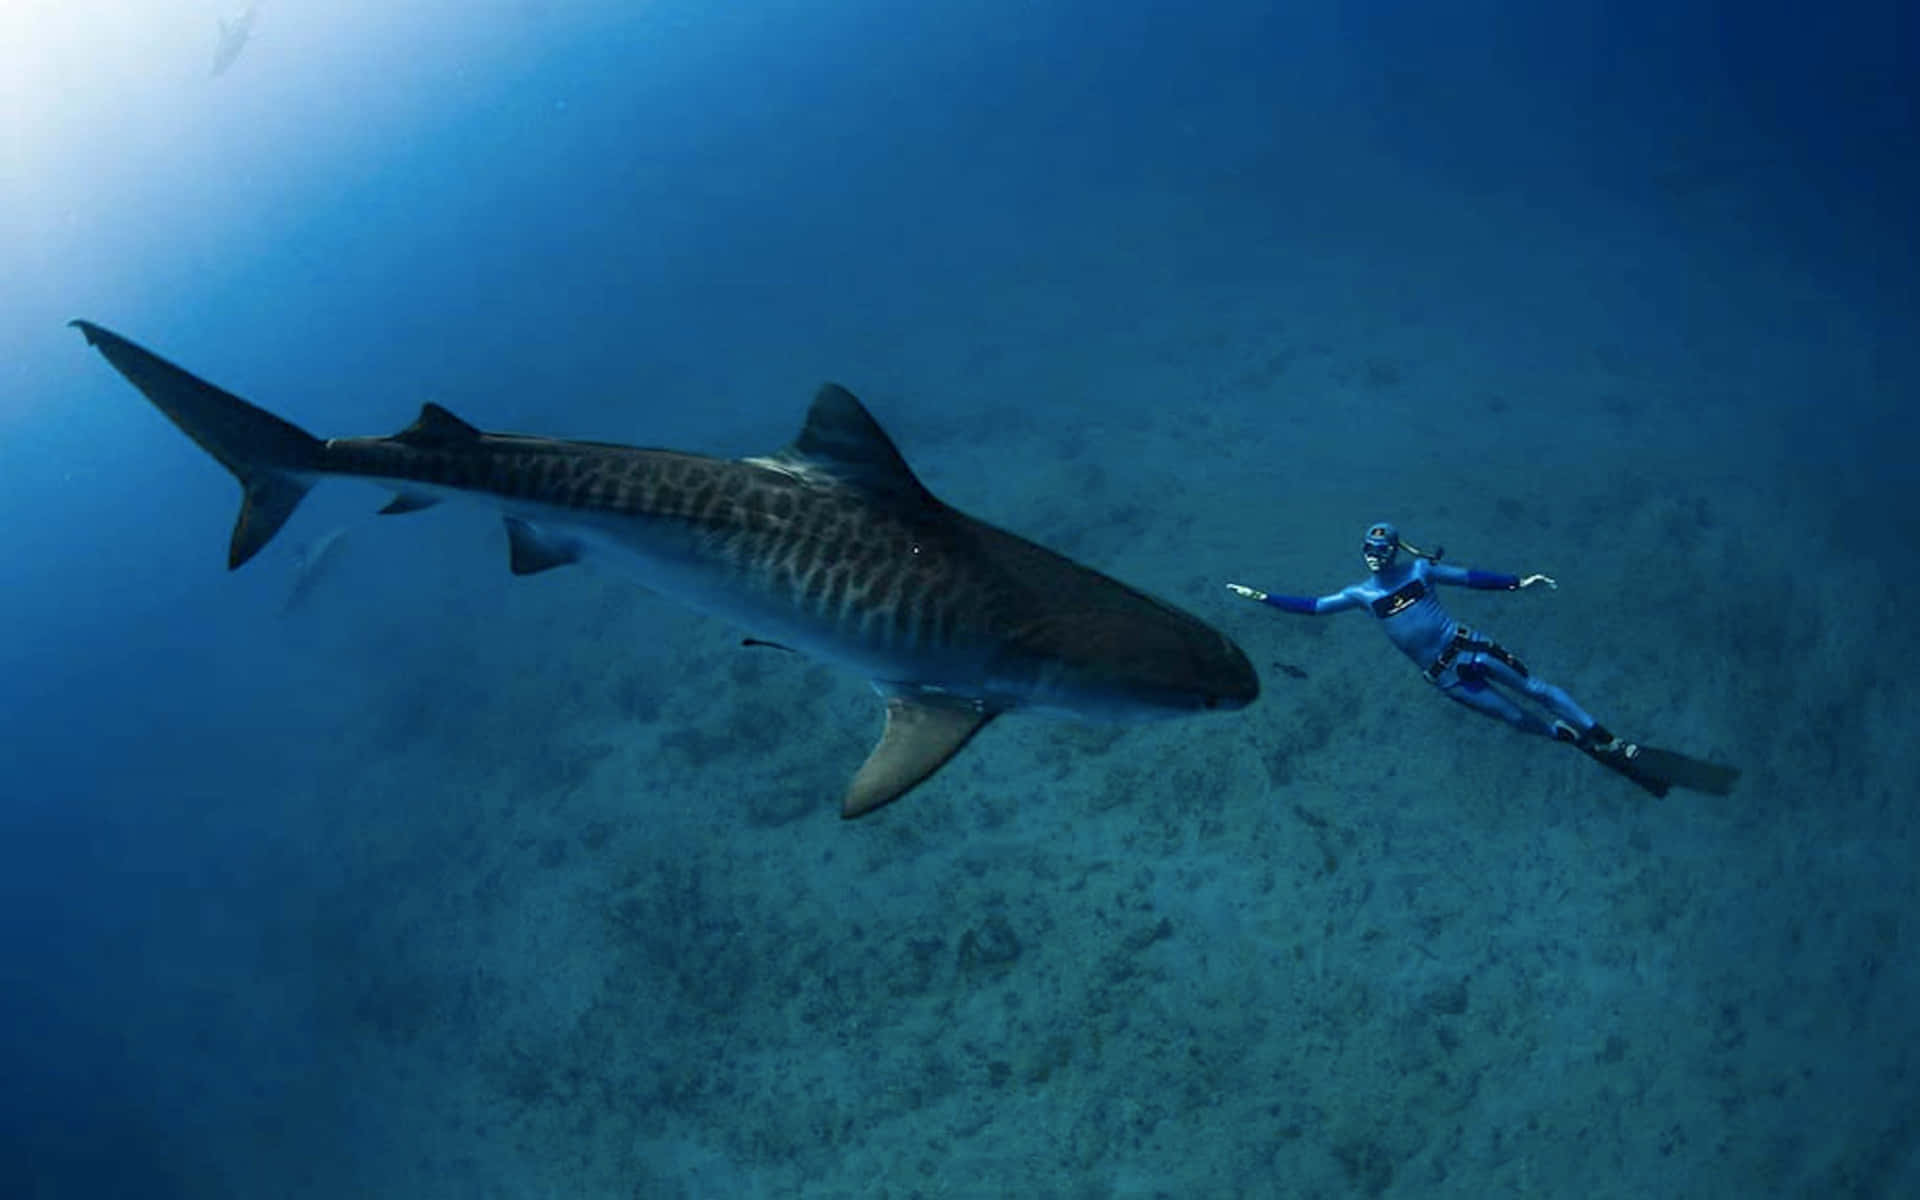 Tiger Sharkand Diver Encounter Wallpaper